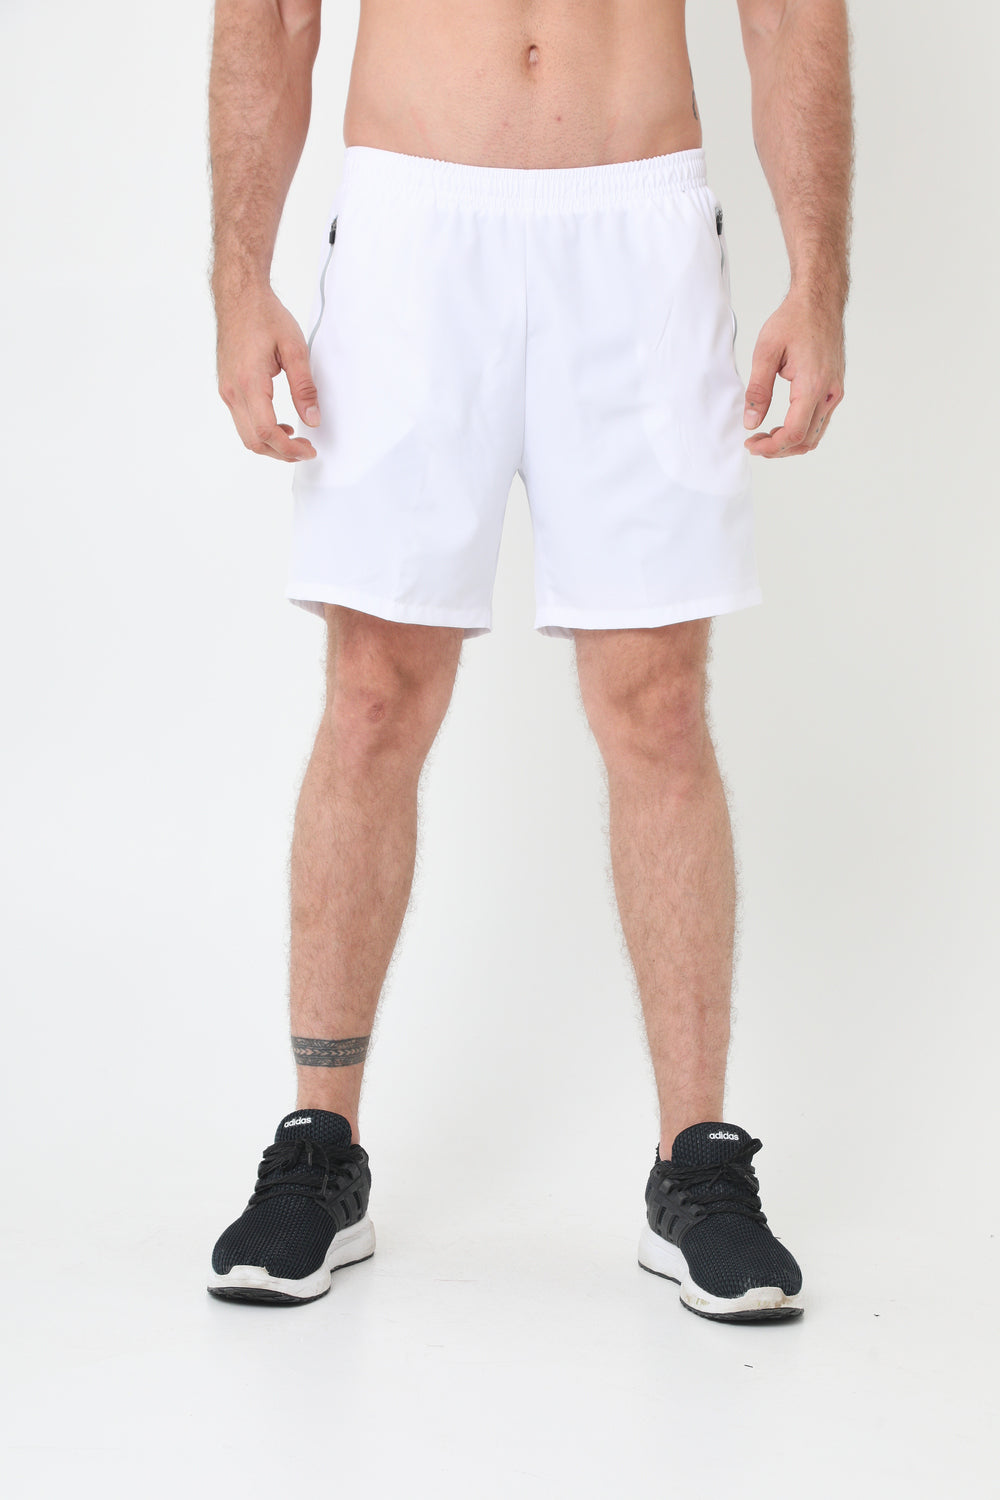 Pantaloneta deportiva blanco óptico ciclista interno y bolsillos laterales para hombre